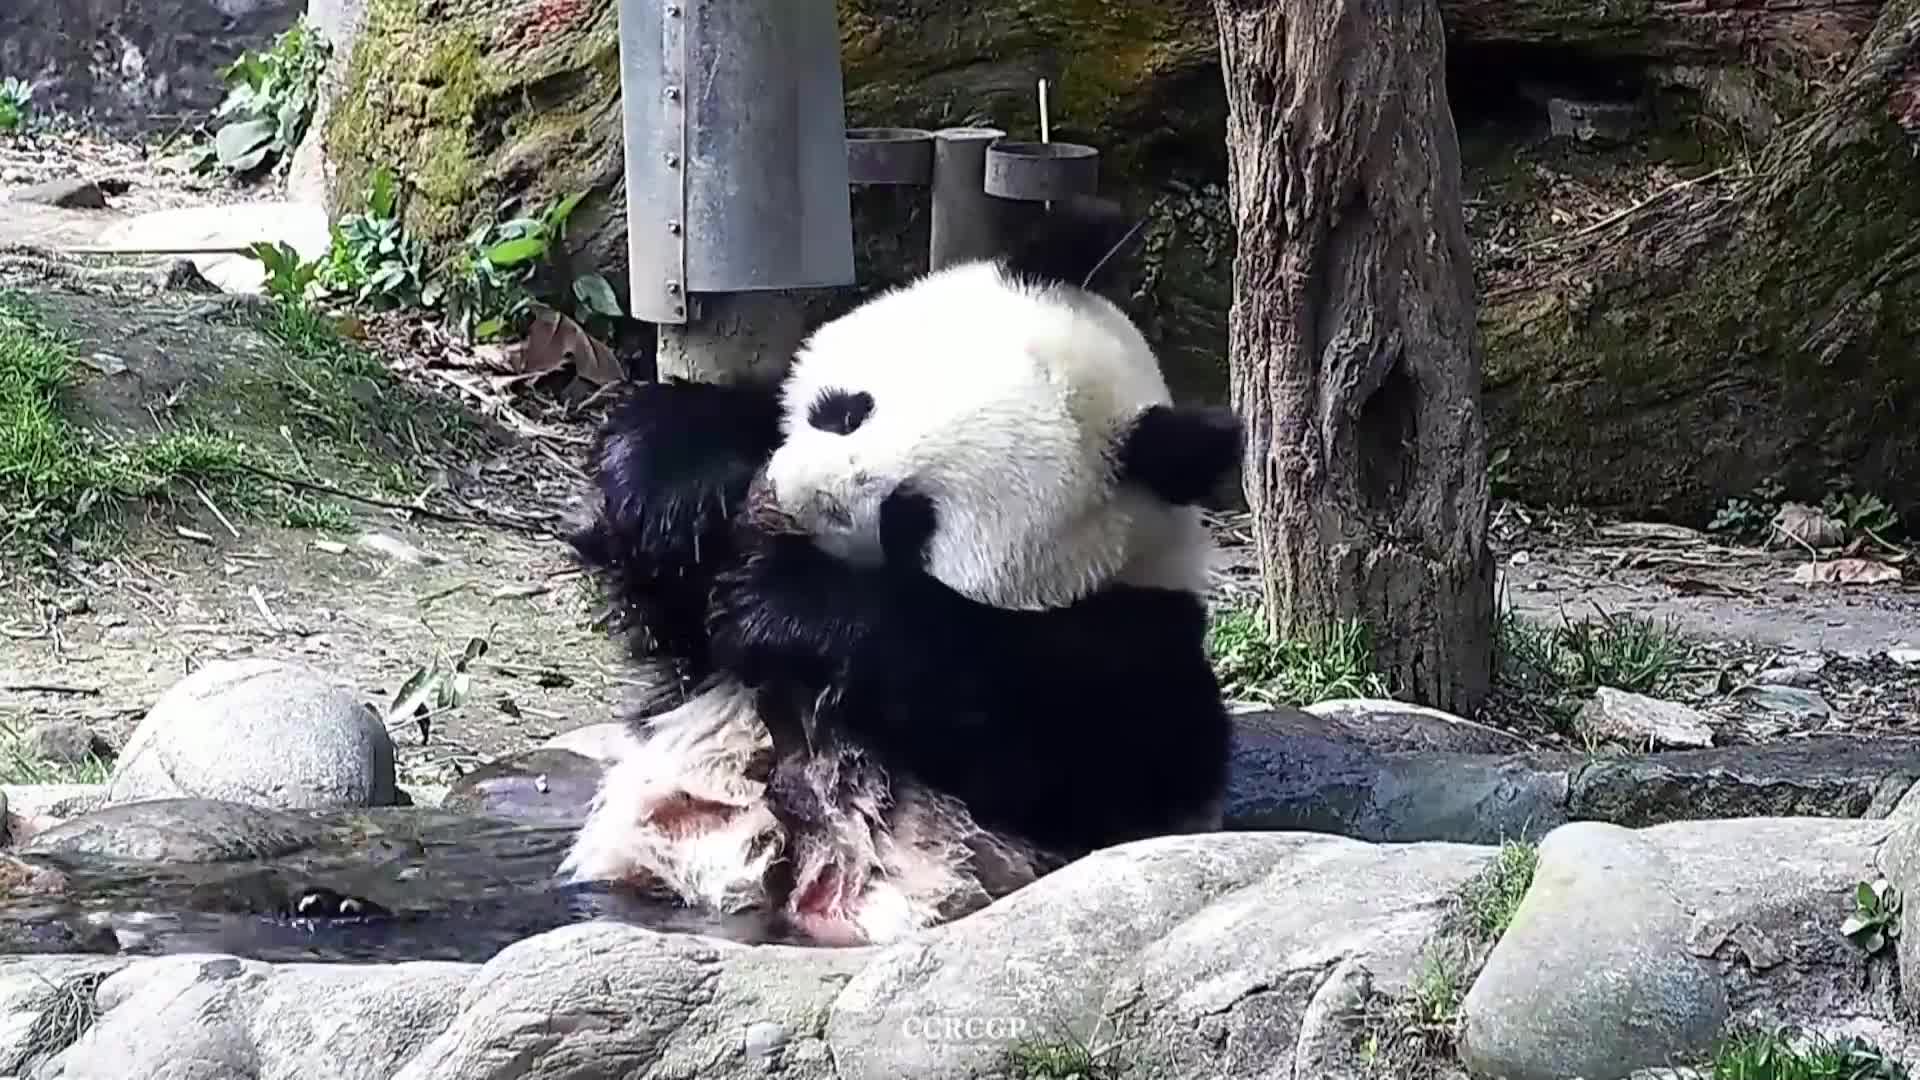 Забавление в джакузи: Панда бе заснета да си хапе лапата докато се къпе (ВИДЕО)